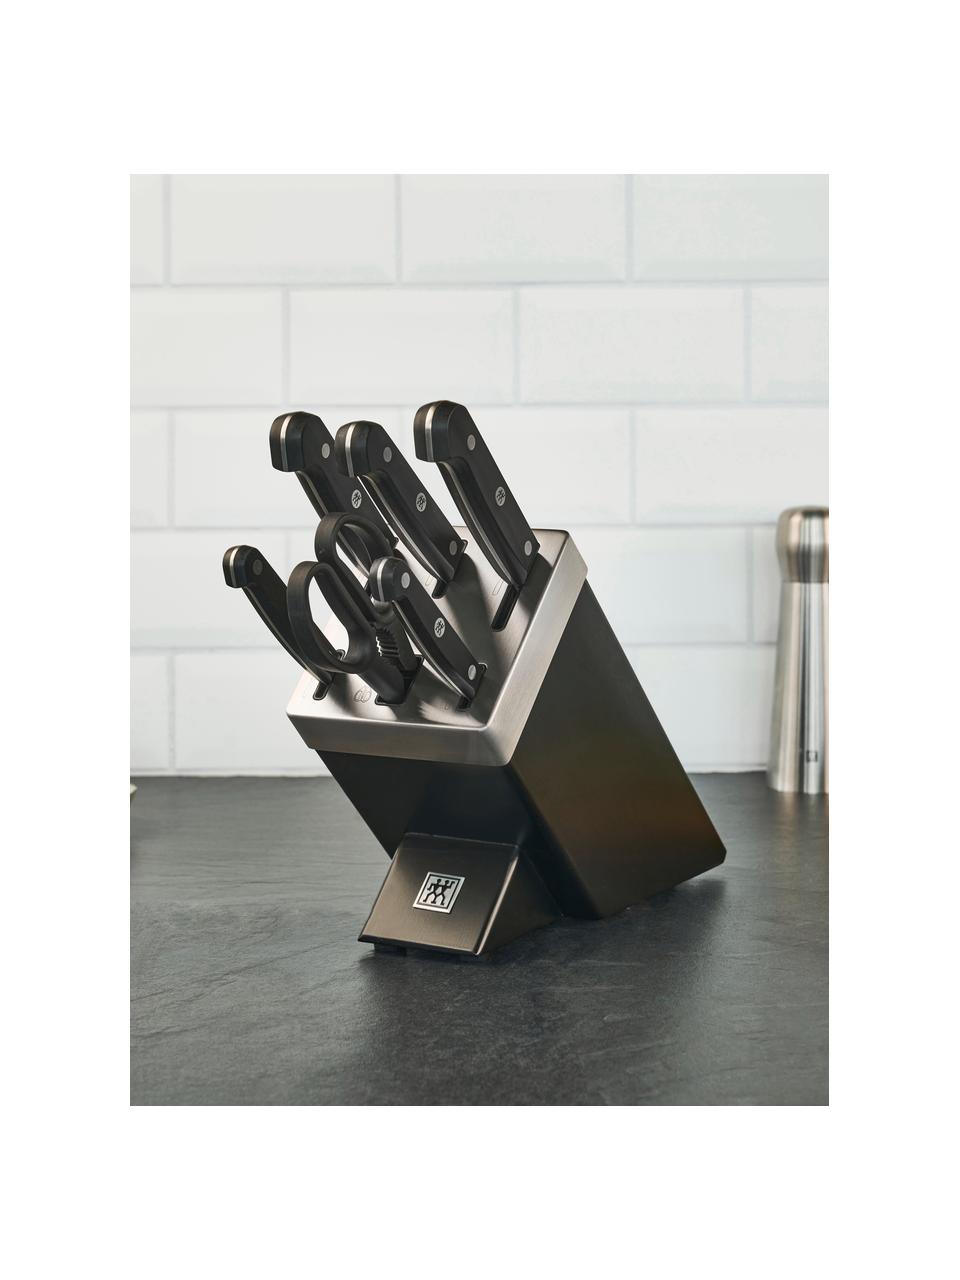 Selbstschärfender Messerblock Gourmet mit 5 Messern und 1 Schere, Messer: Edelstahl, Griff: Kunststoff, Schwarz, Set mit verschiedenen Größen